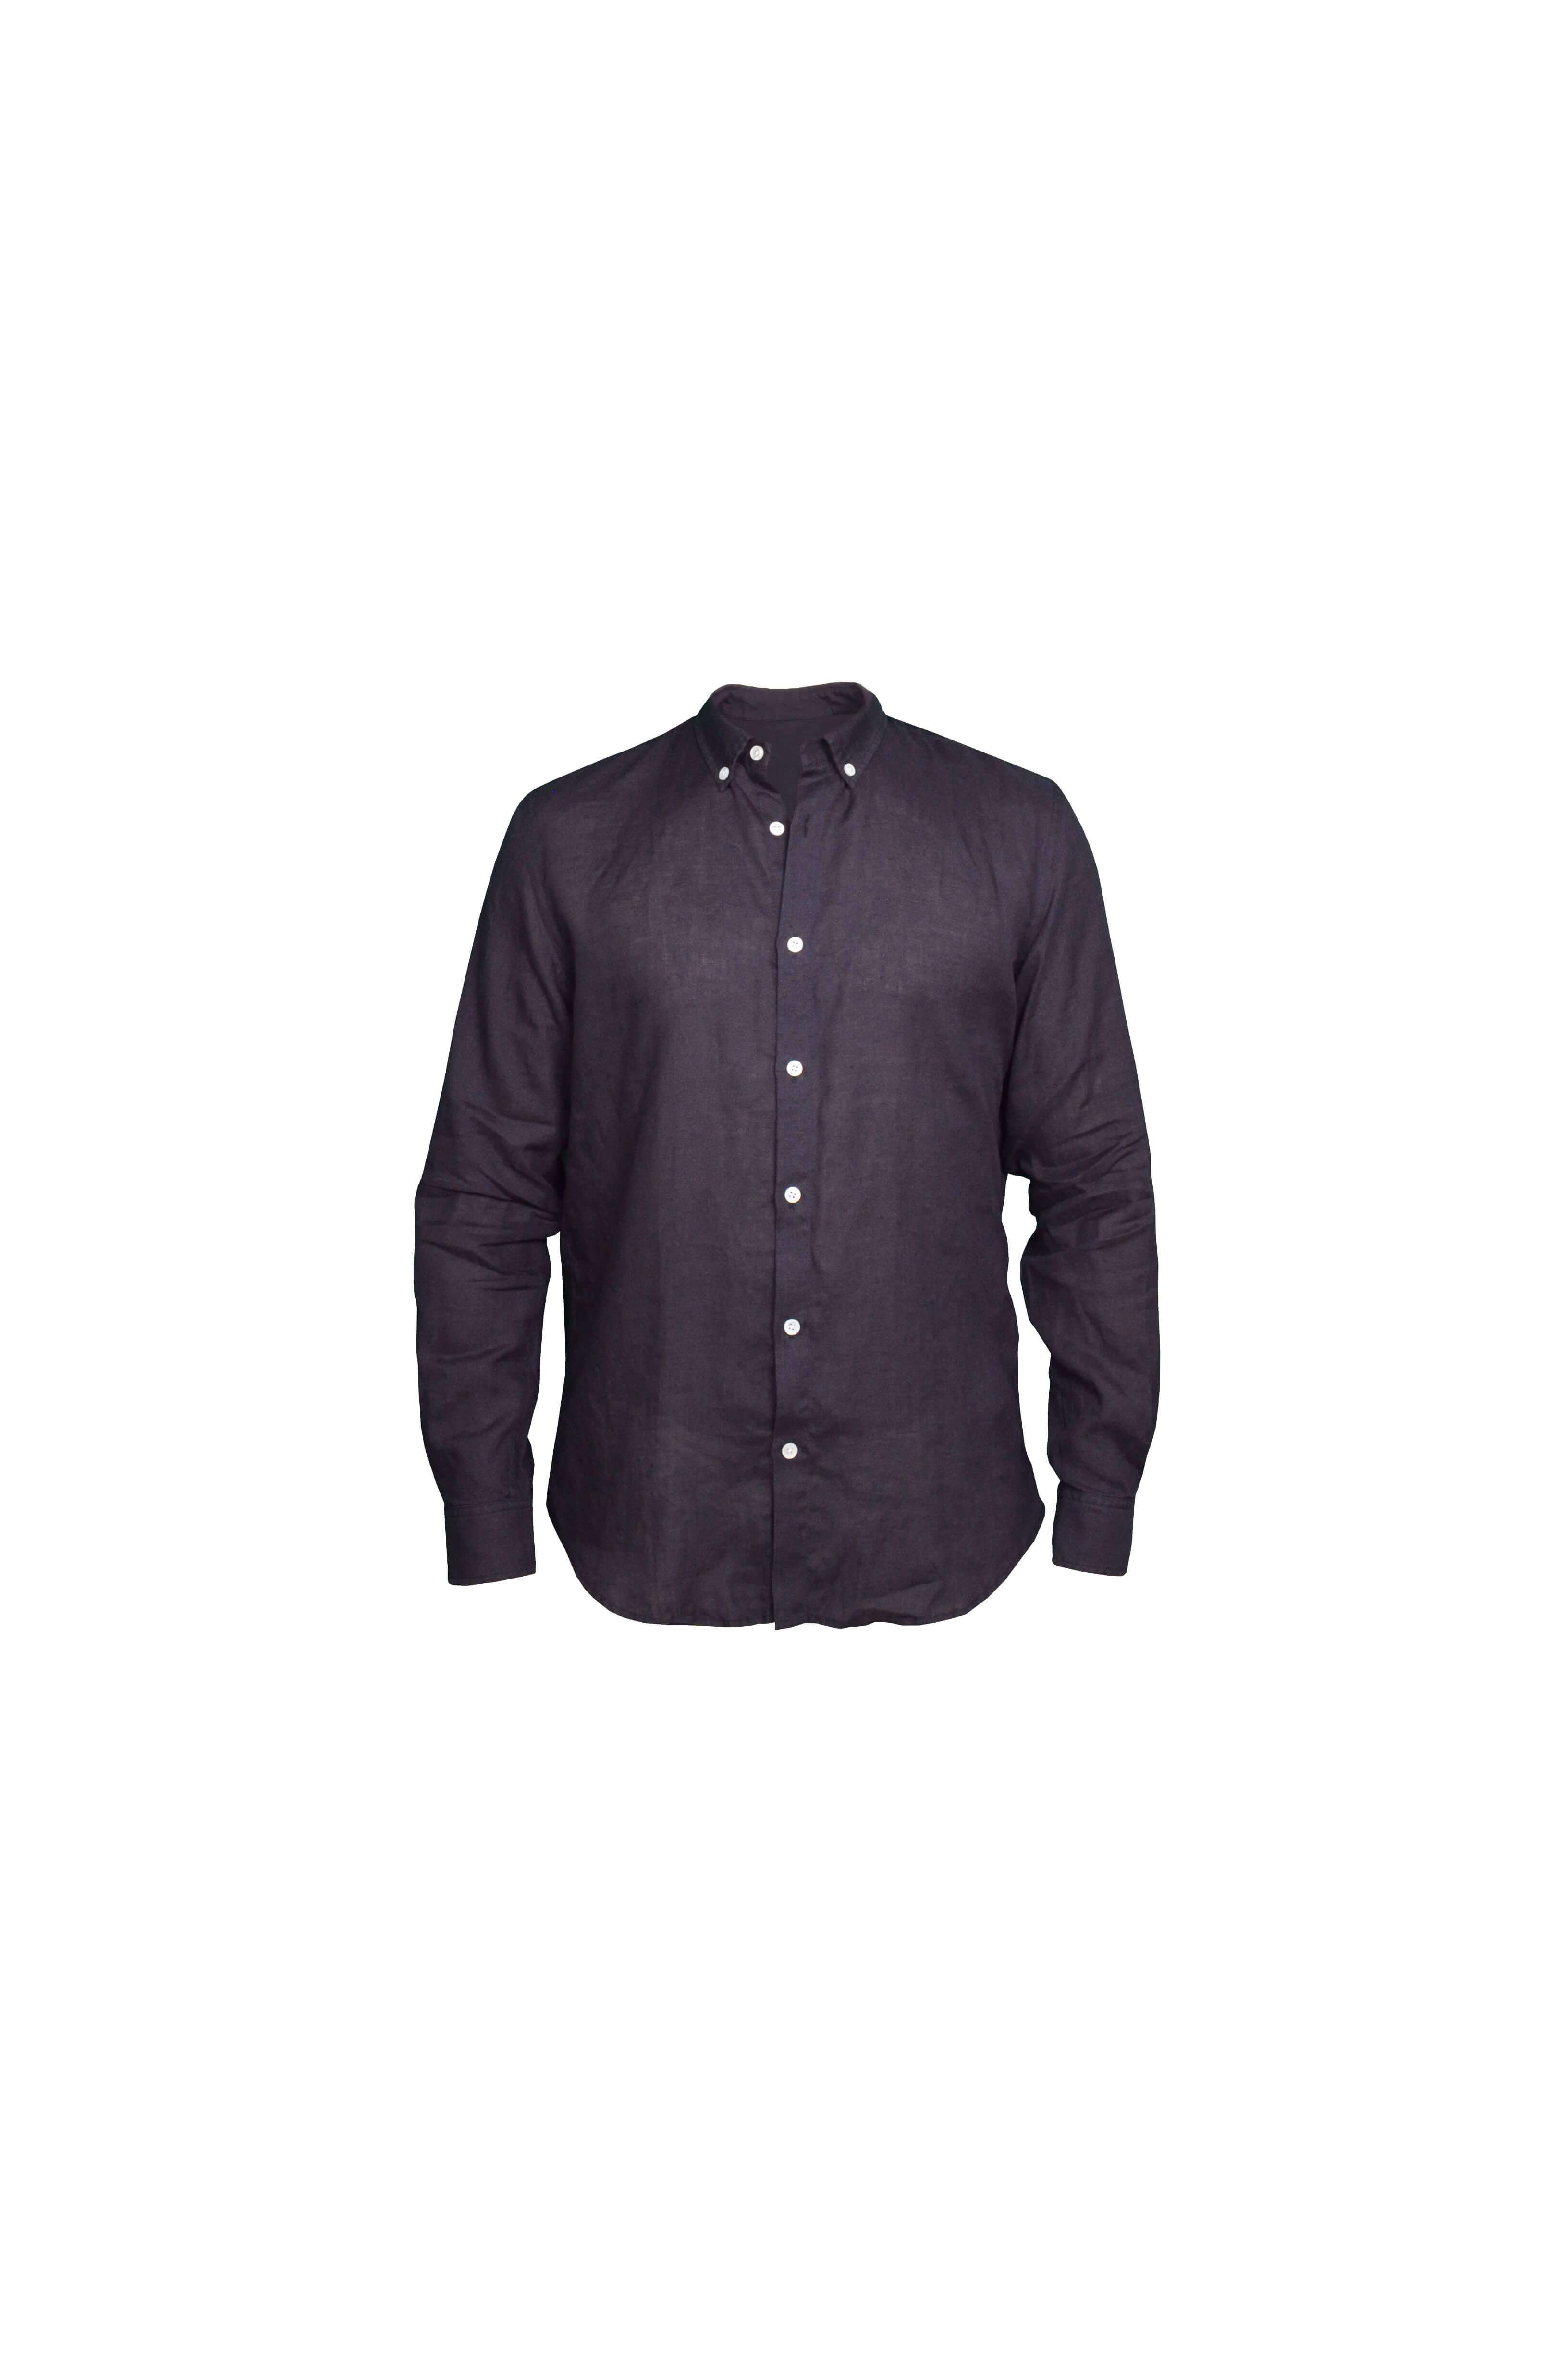 Faros Black Linen Shirt - FAROS LINEN